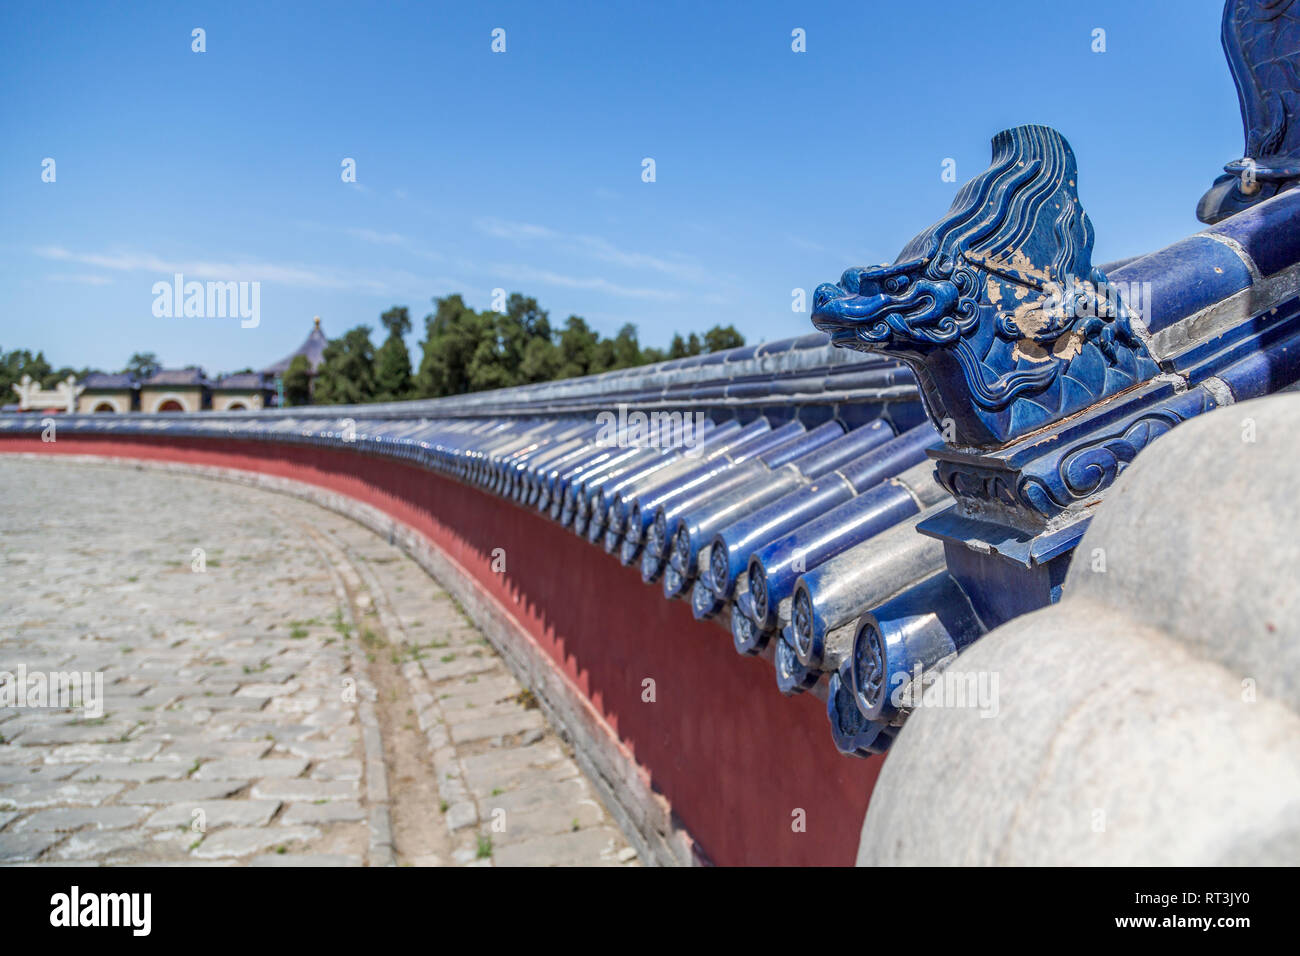 Ein blau glasiert Drachen Kopf schmückt eine rote kreisförmige Mauer überstiegen mit blauen Fliesen Glasur. Dies ist einer der Mauern des kreisförmigen Damm Altar. Stockfoto